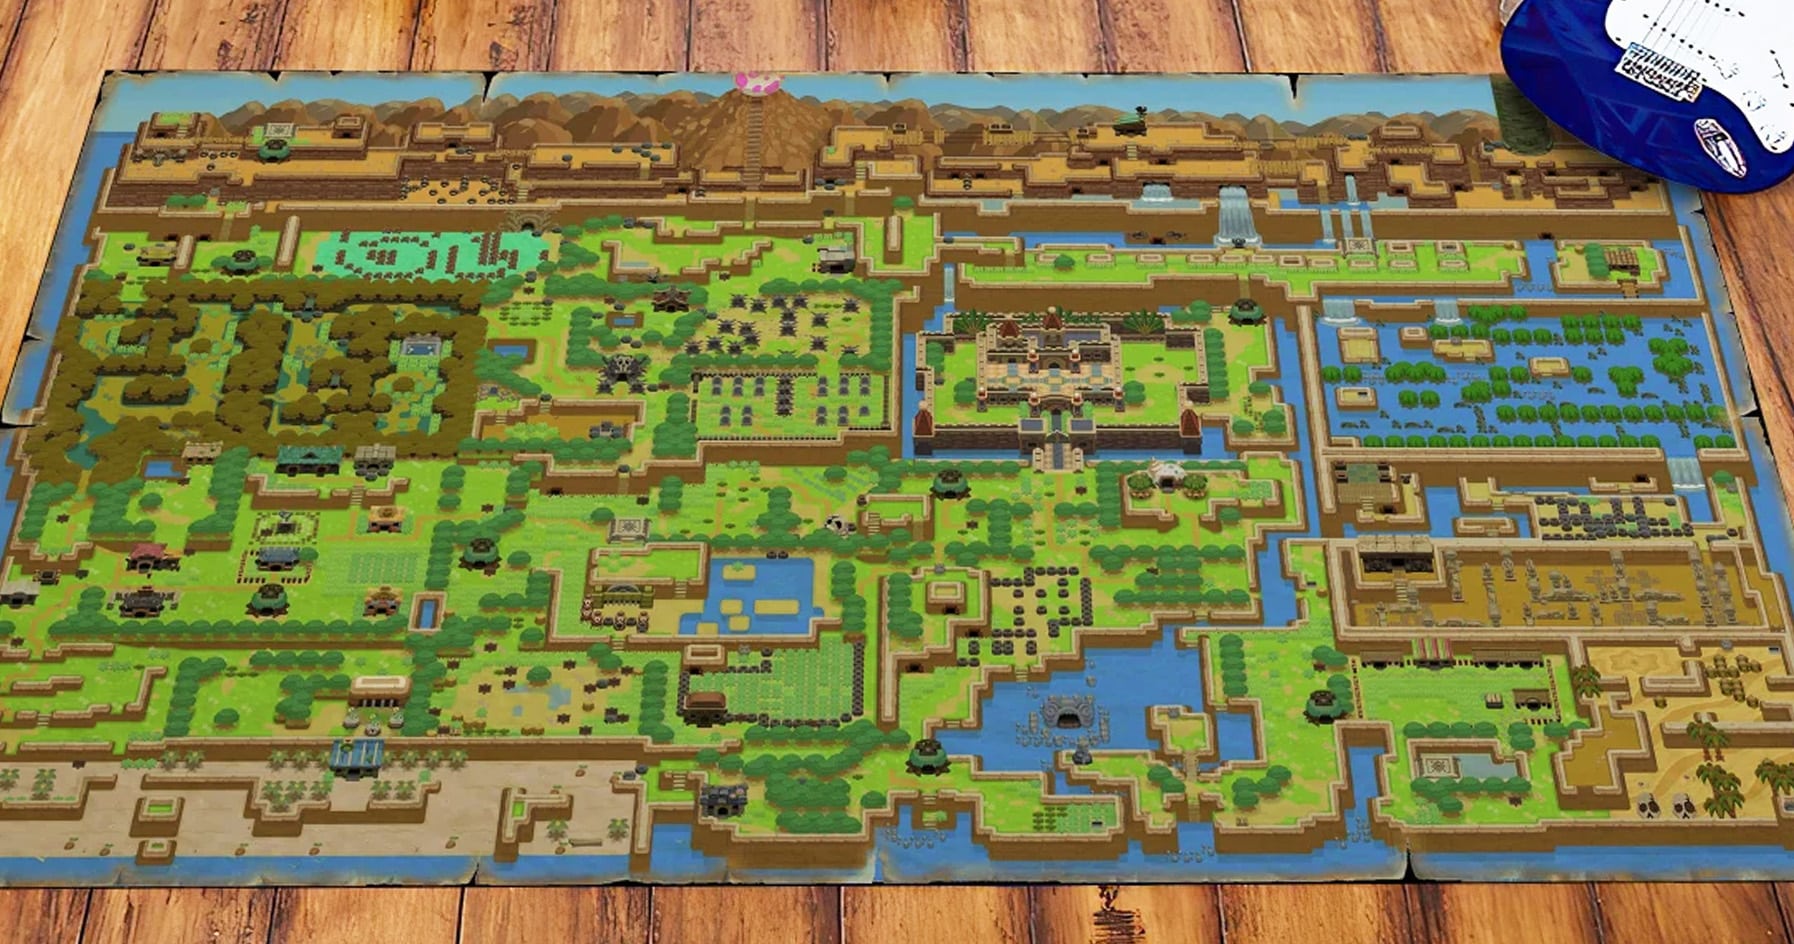 Legend of Zelda Map Rug